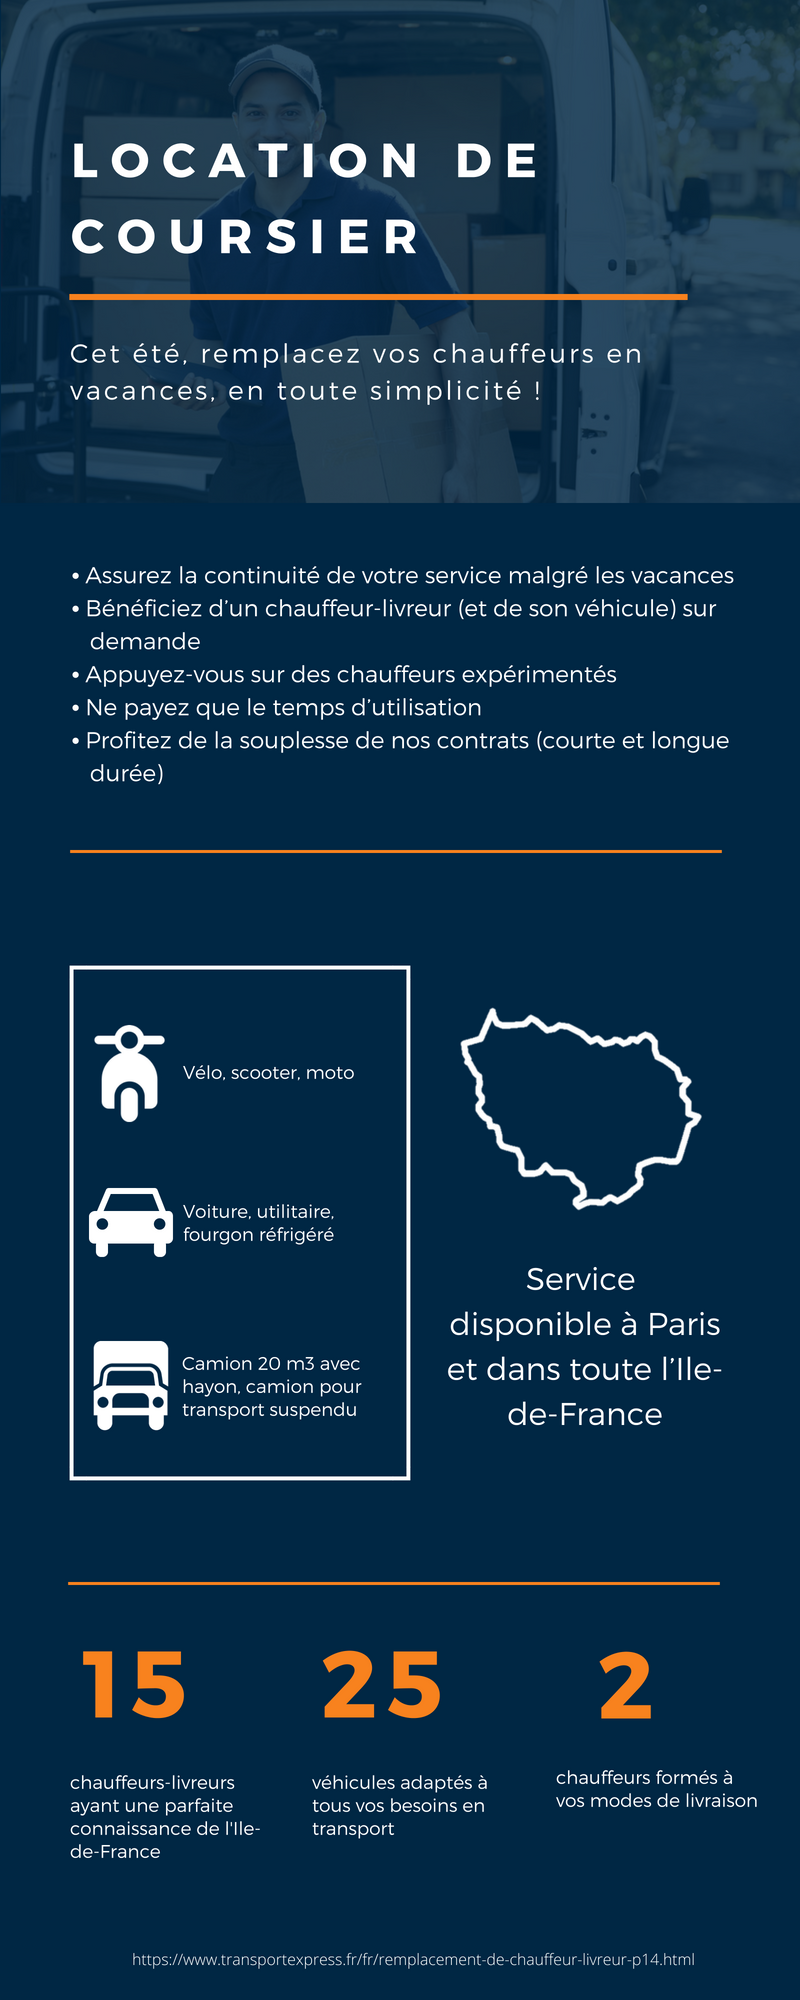 Location de coursier : Transport Express met ses chauffeurs à votre disposition (infographie)